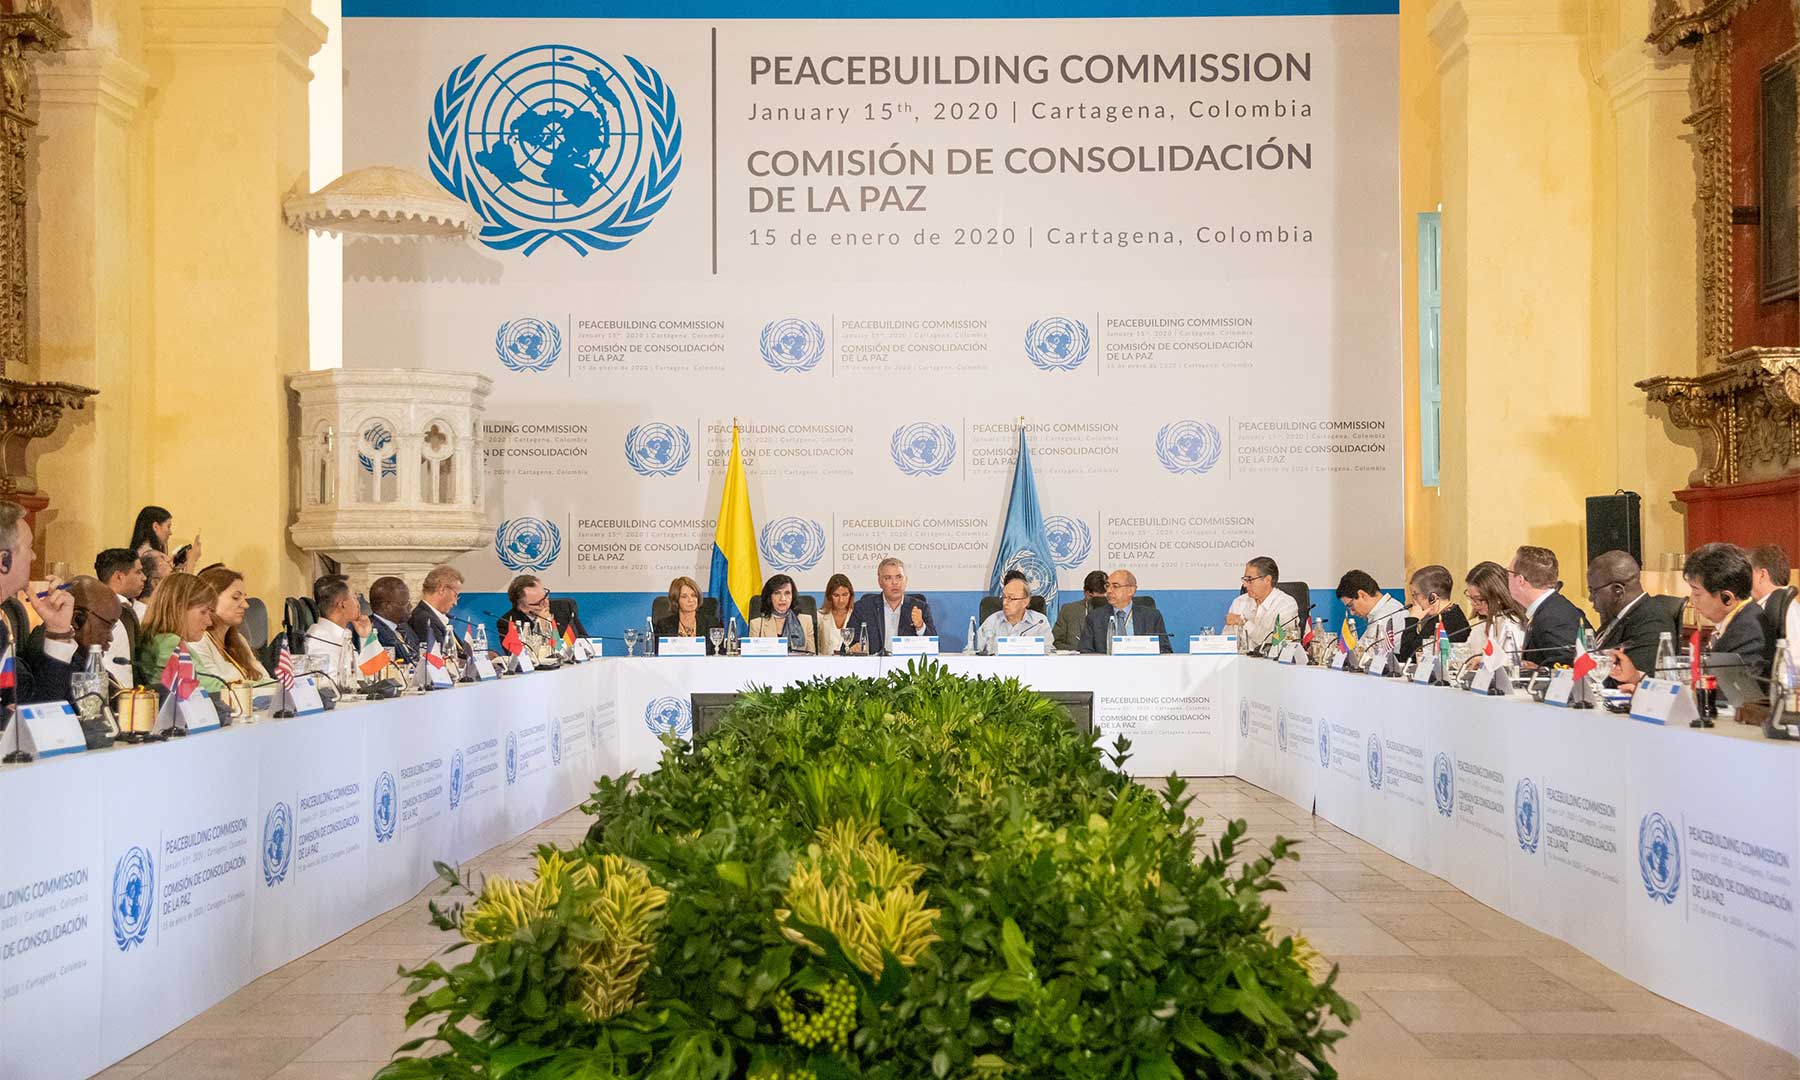 Presencia de la Comisión de Consolidación de la Paz de la ONU en Colombia es un espaldarazo a una nación y a una agenda de construcción de paz: Presidente Iván Duque